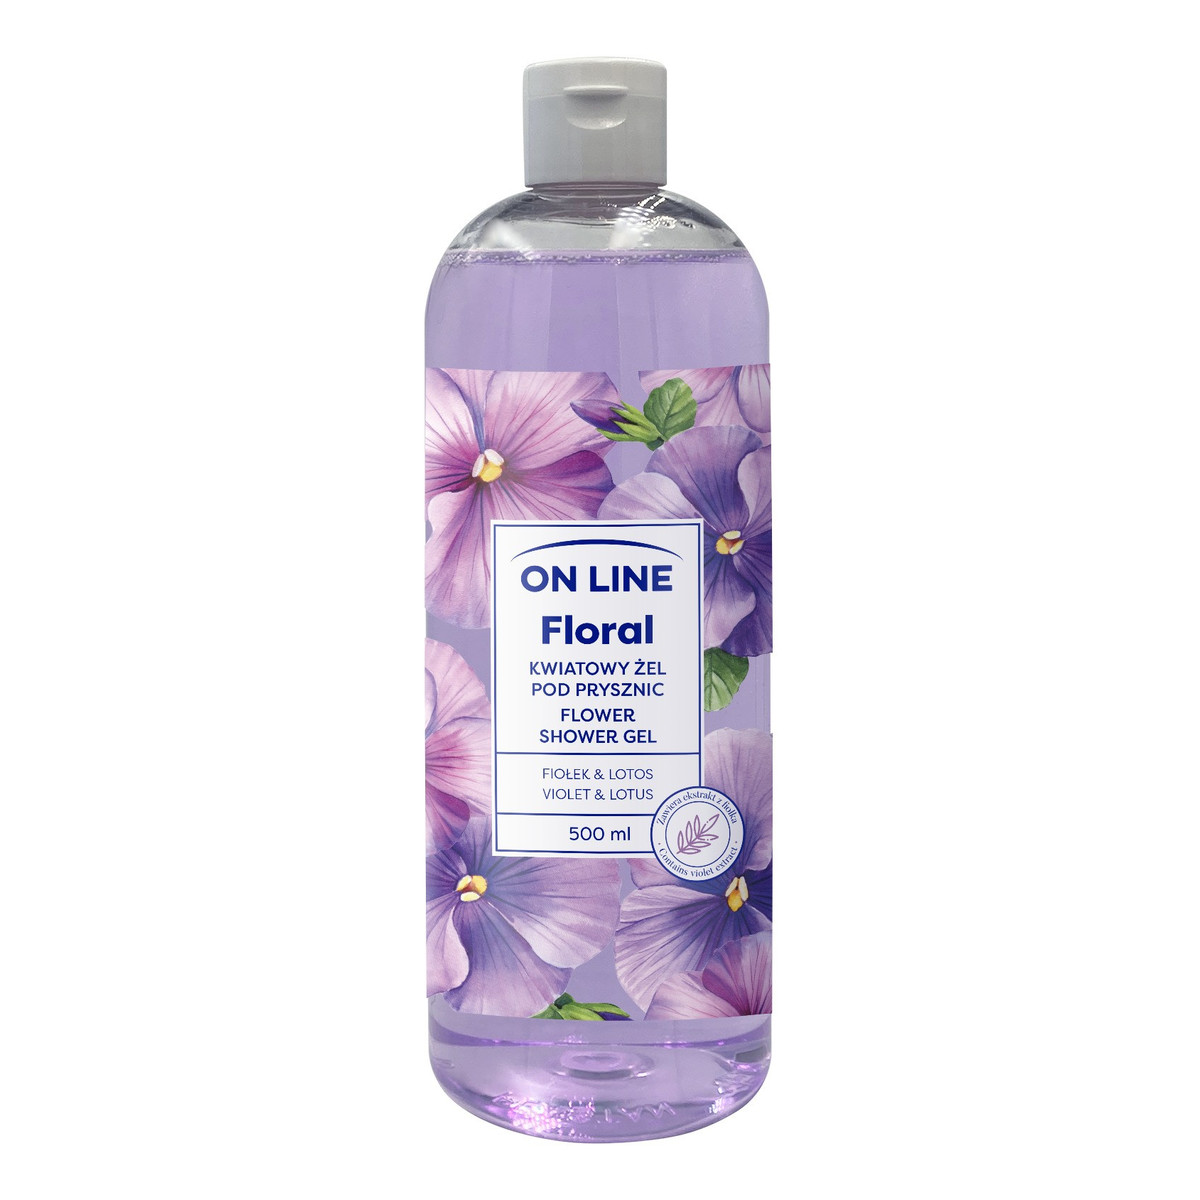 On Line Floral Kwiatowy żel pod prysznic - Fiołek & Lotos 500ml